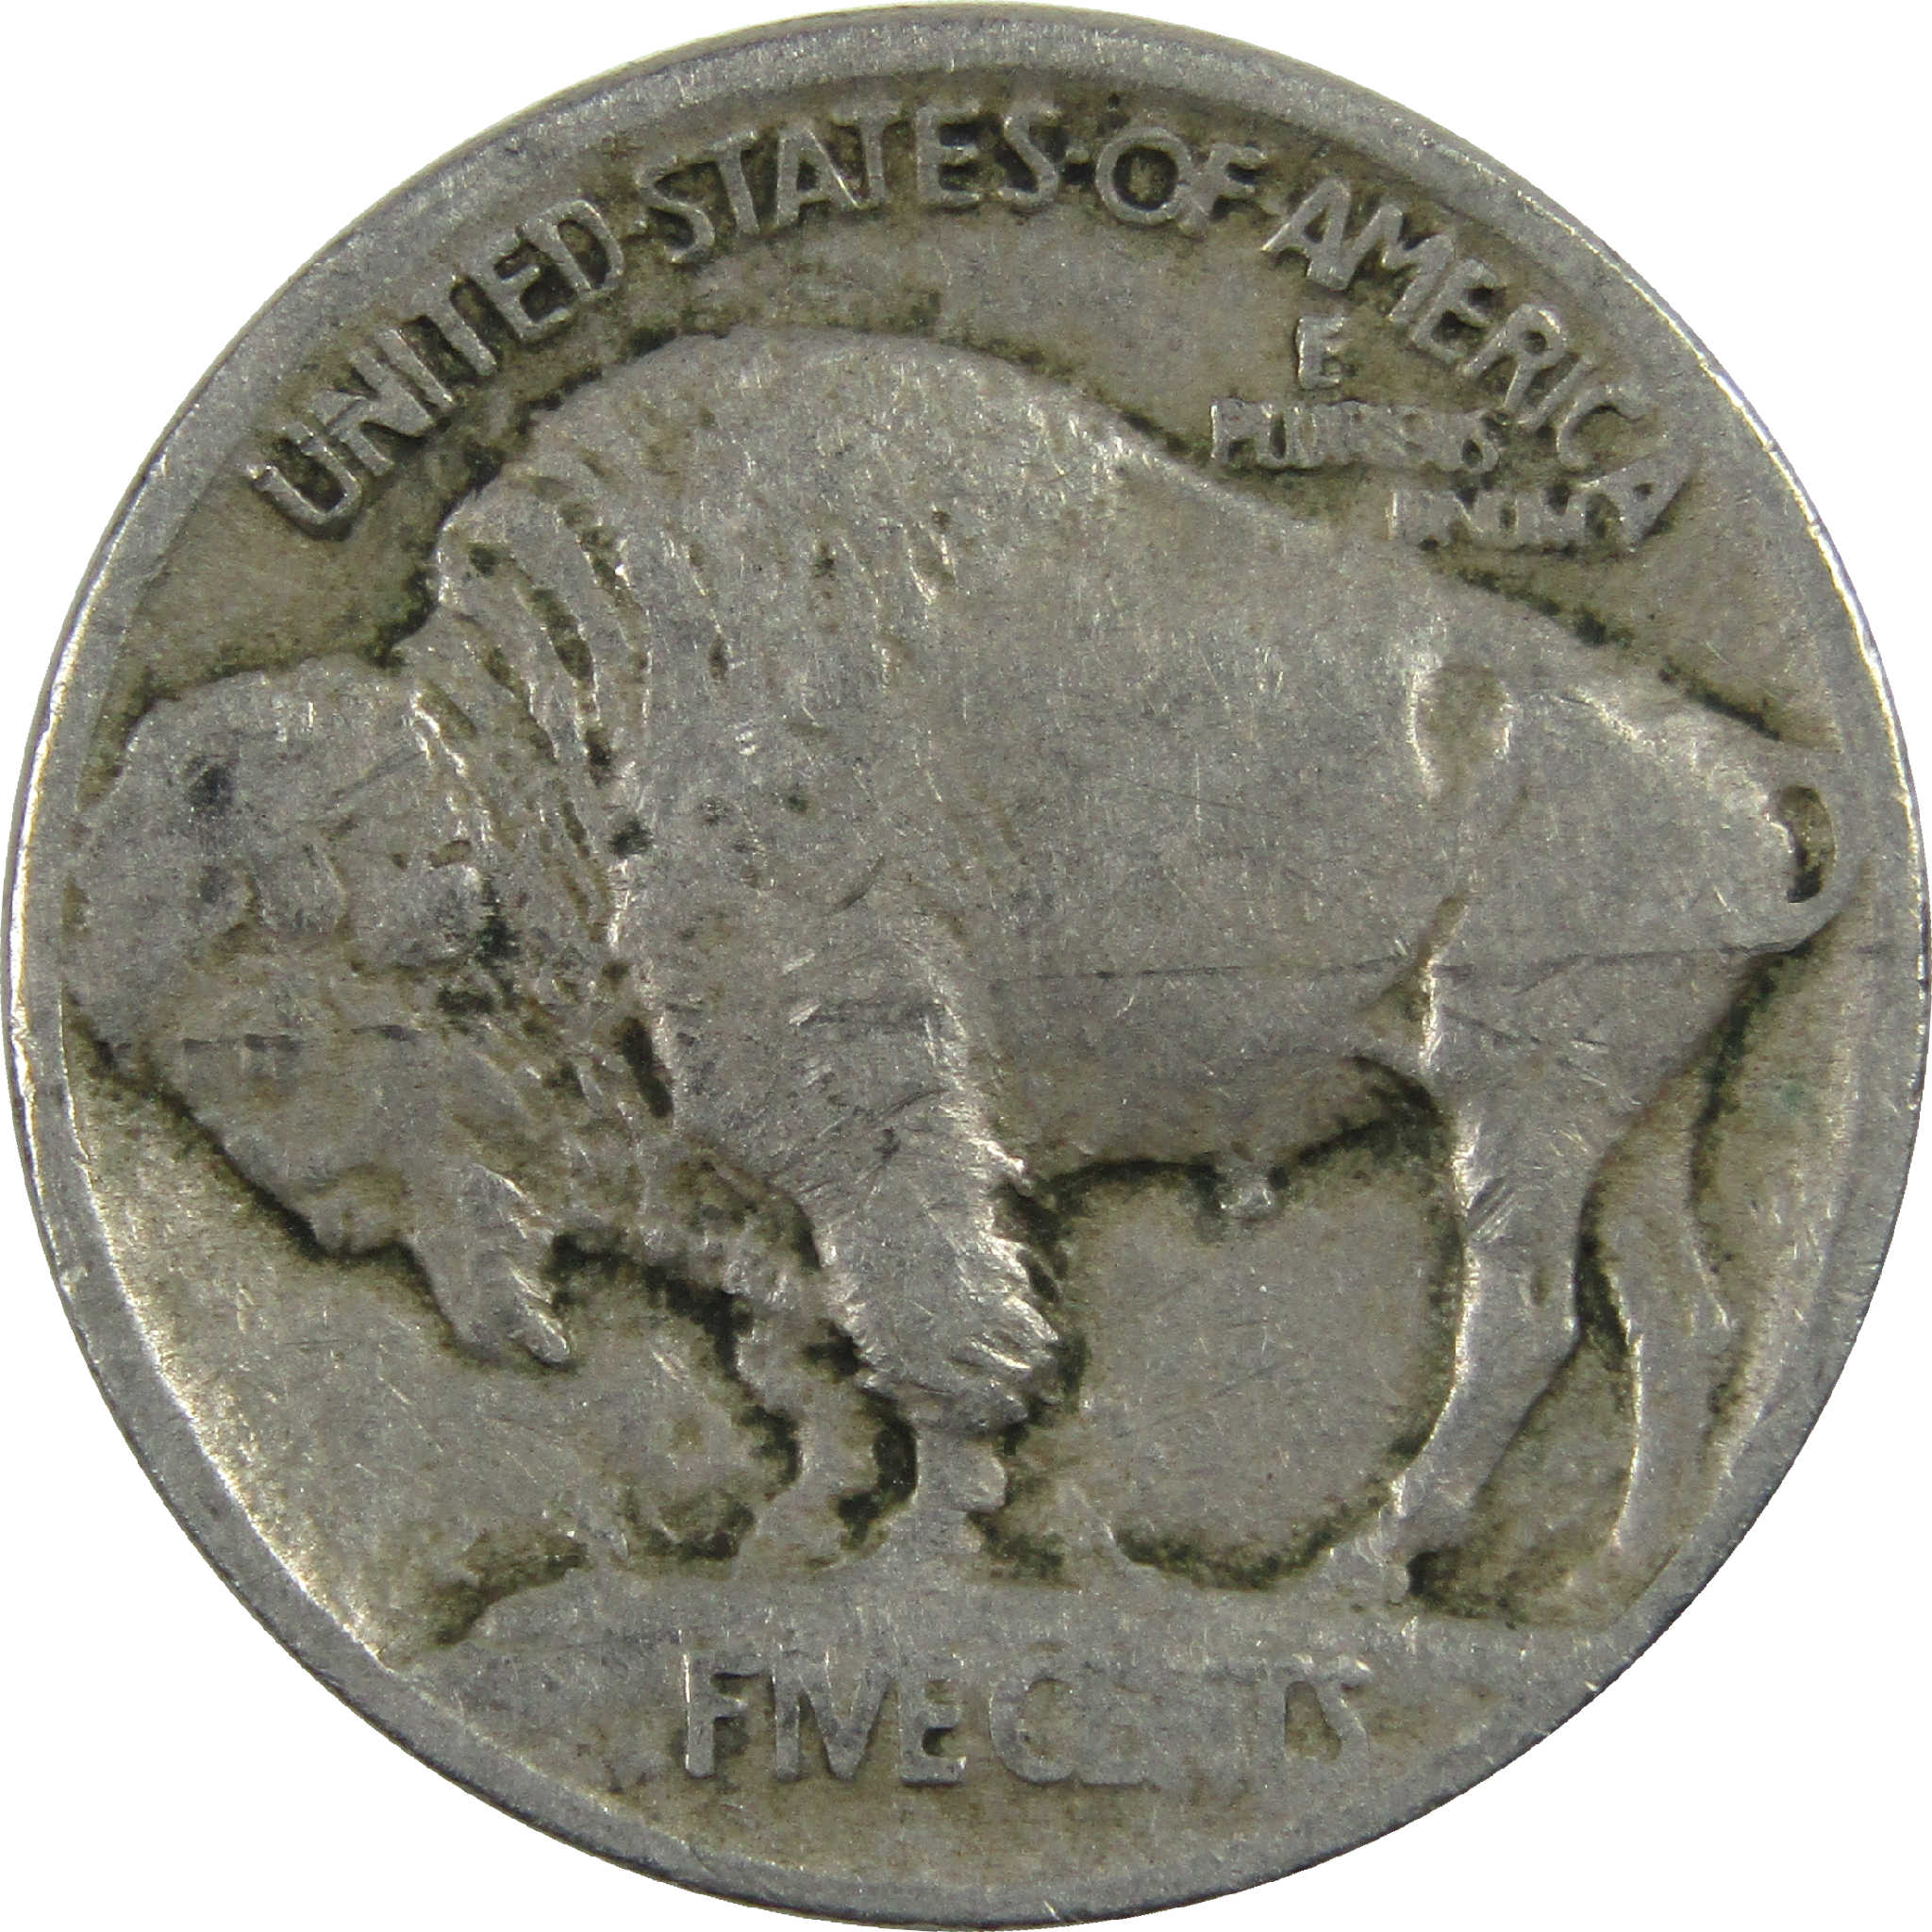 1913 Type 1 Indian Head Buffalo Nickel VG Very Good 5c Coin SKU:I12602